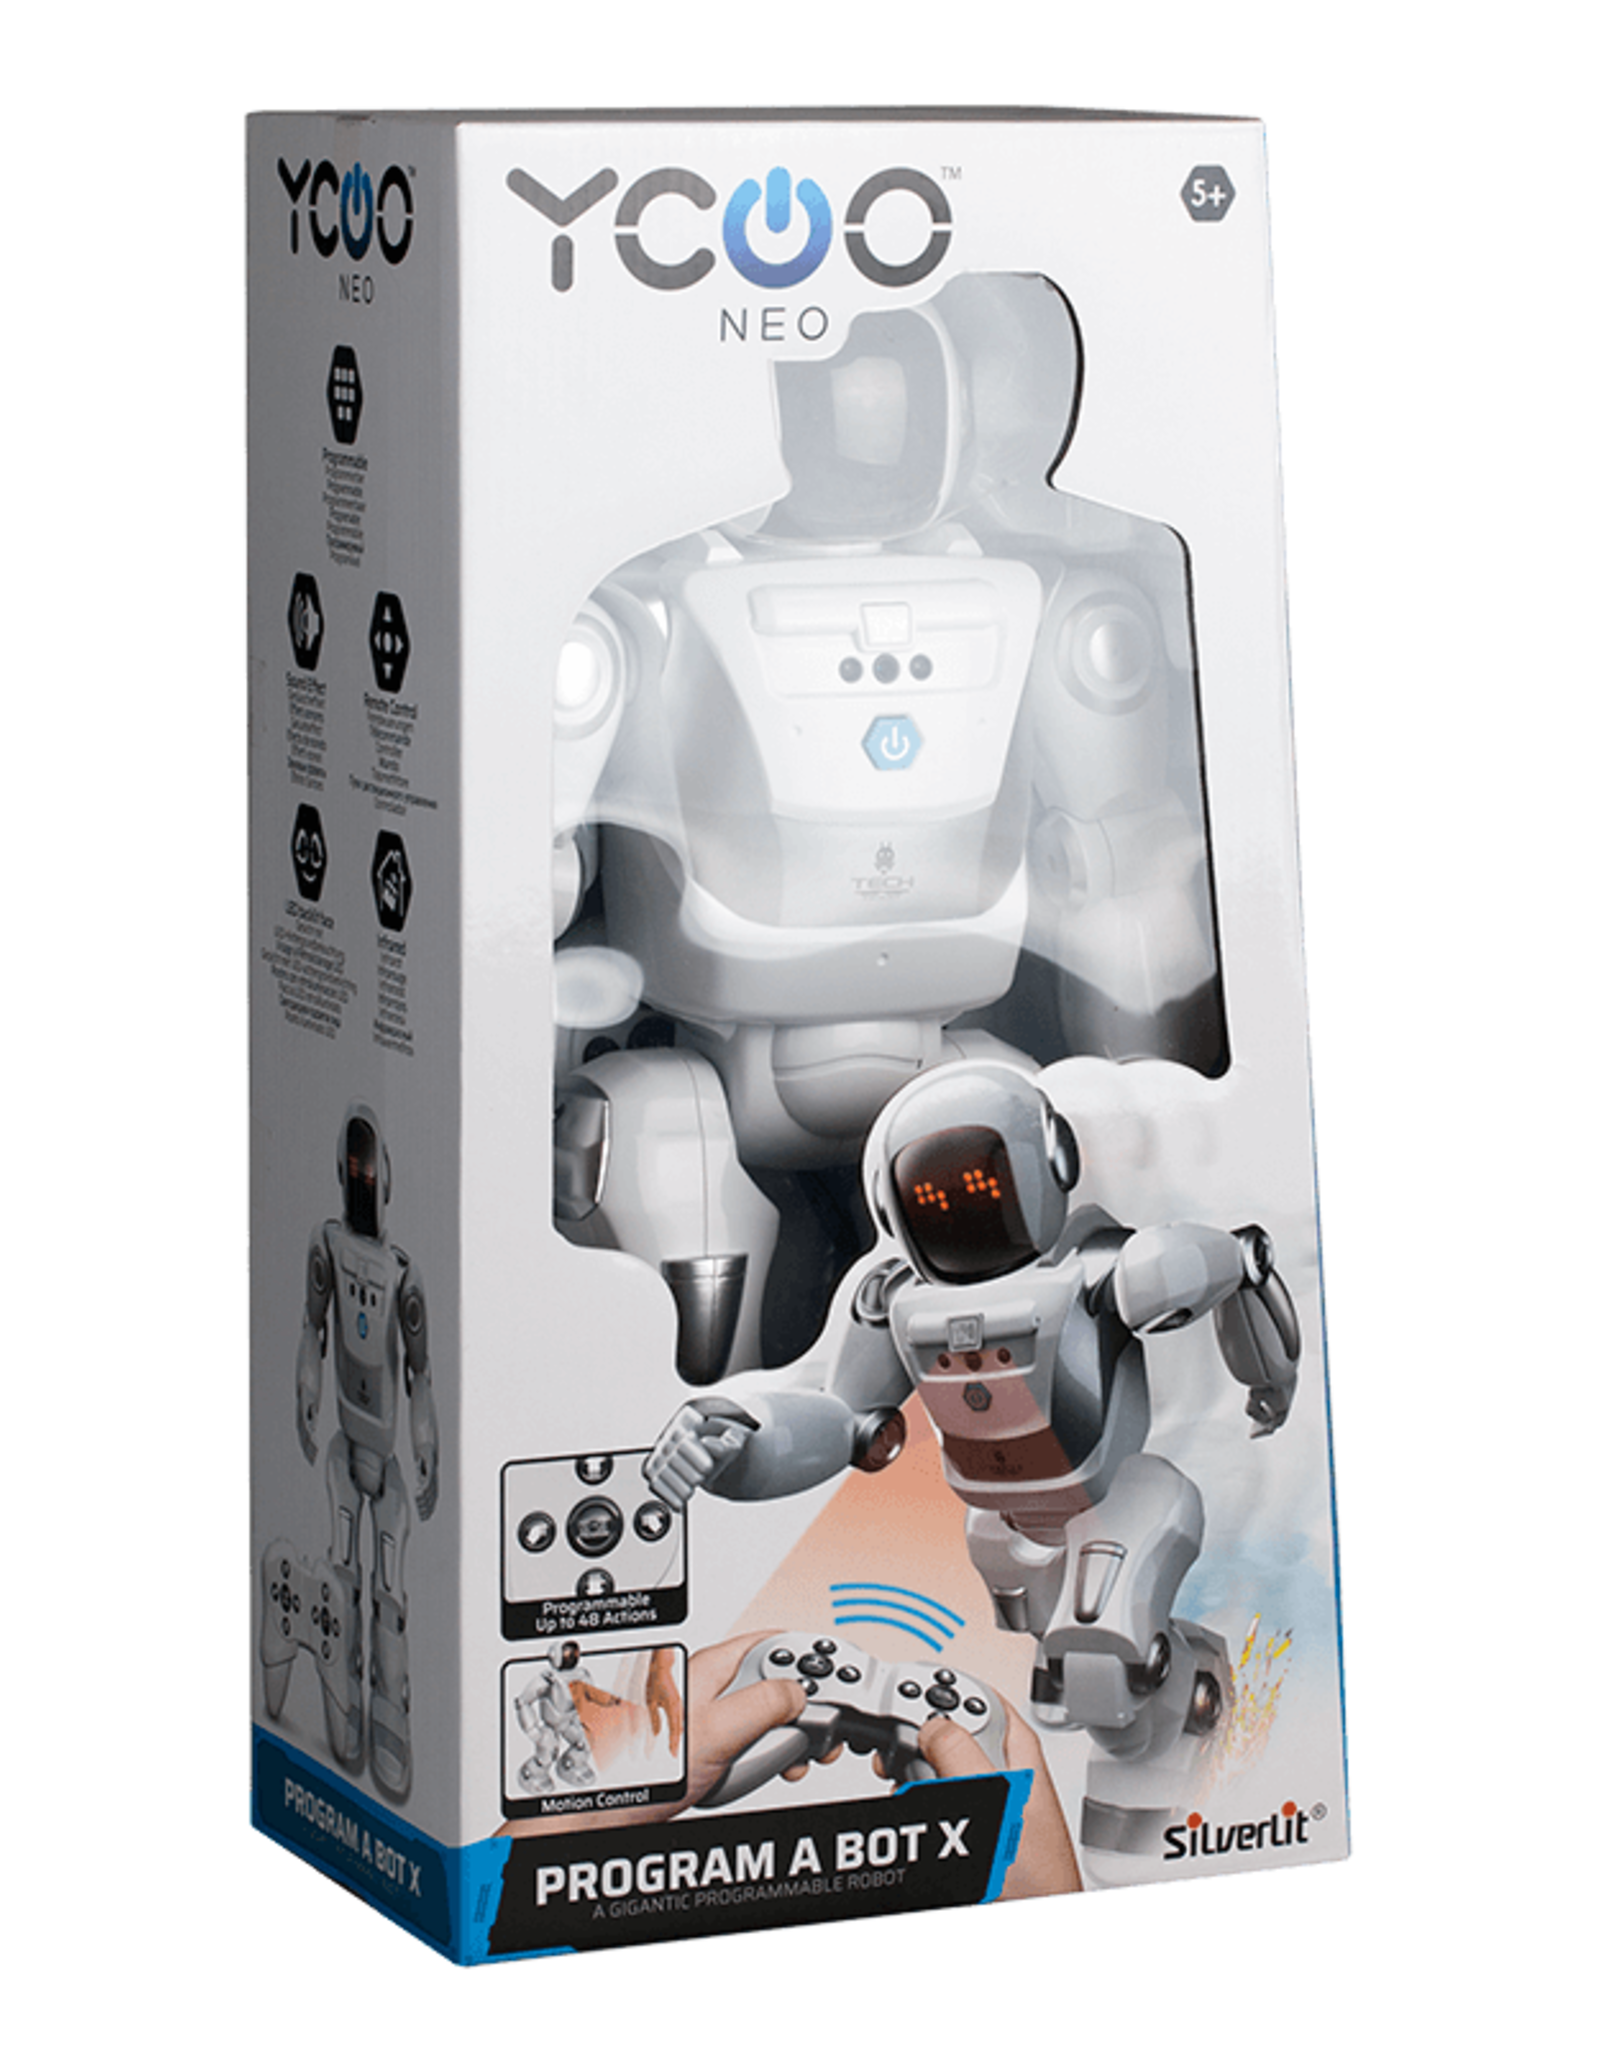 Ycoo Neo Program A Bot X